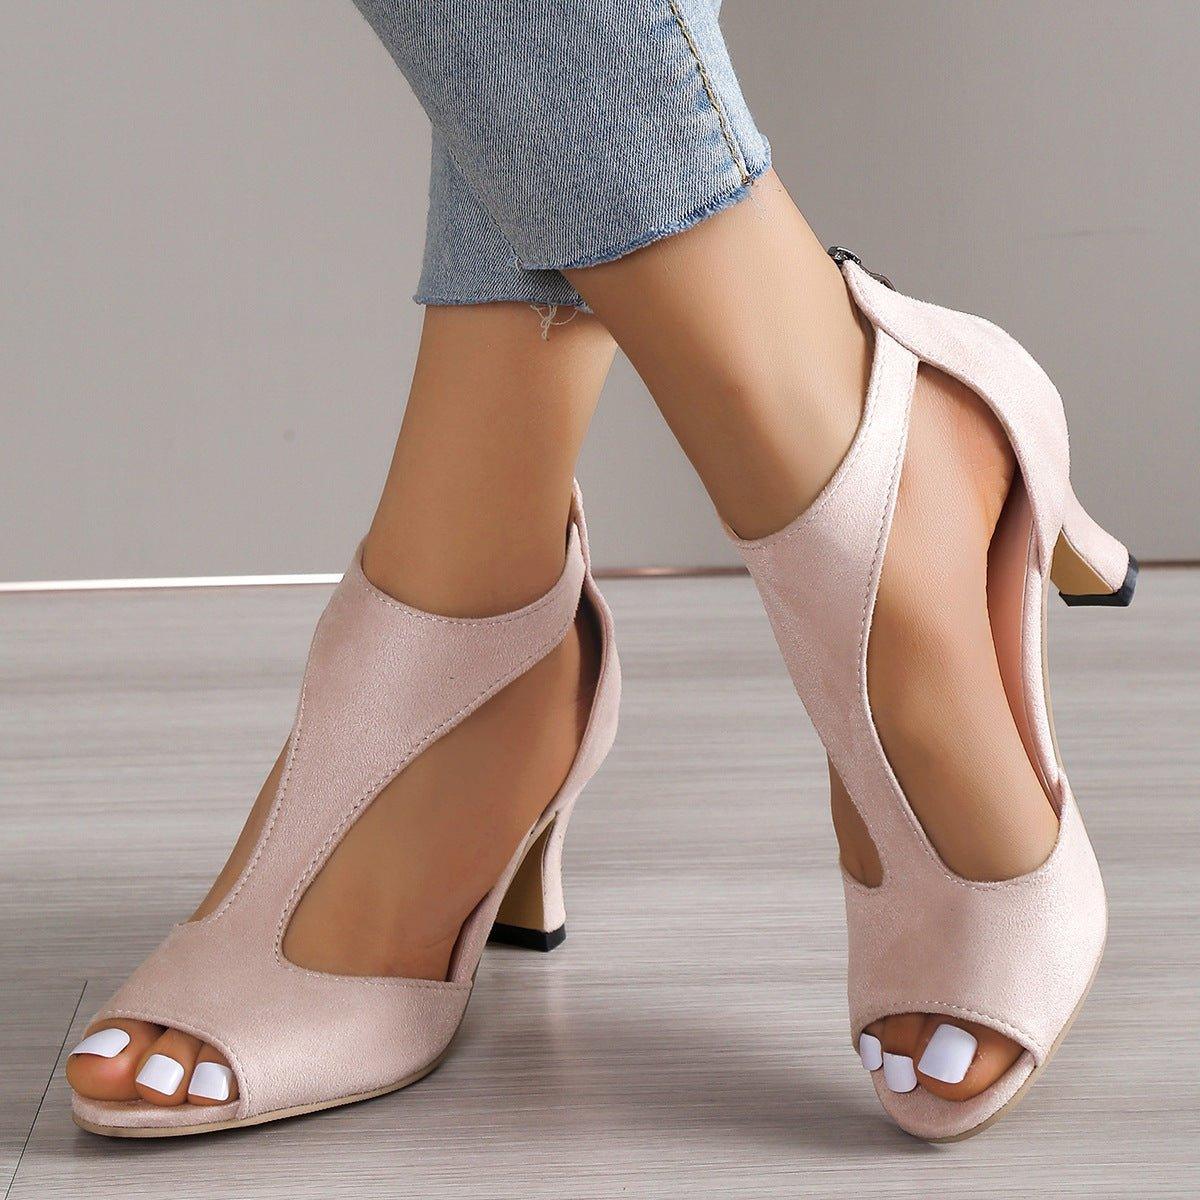 High Heel Peep Toe Sandals Women Back Zipper Outdoor Summer Shoes | MODE BY OH